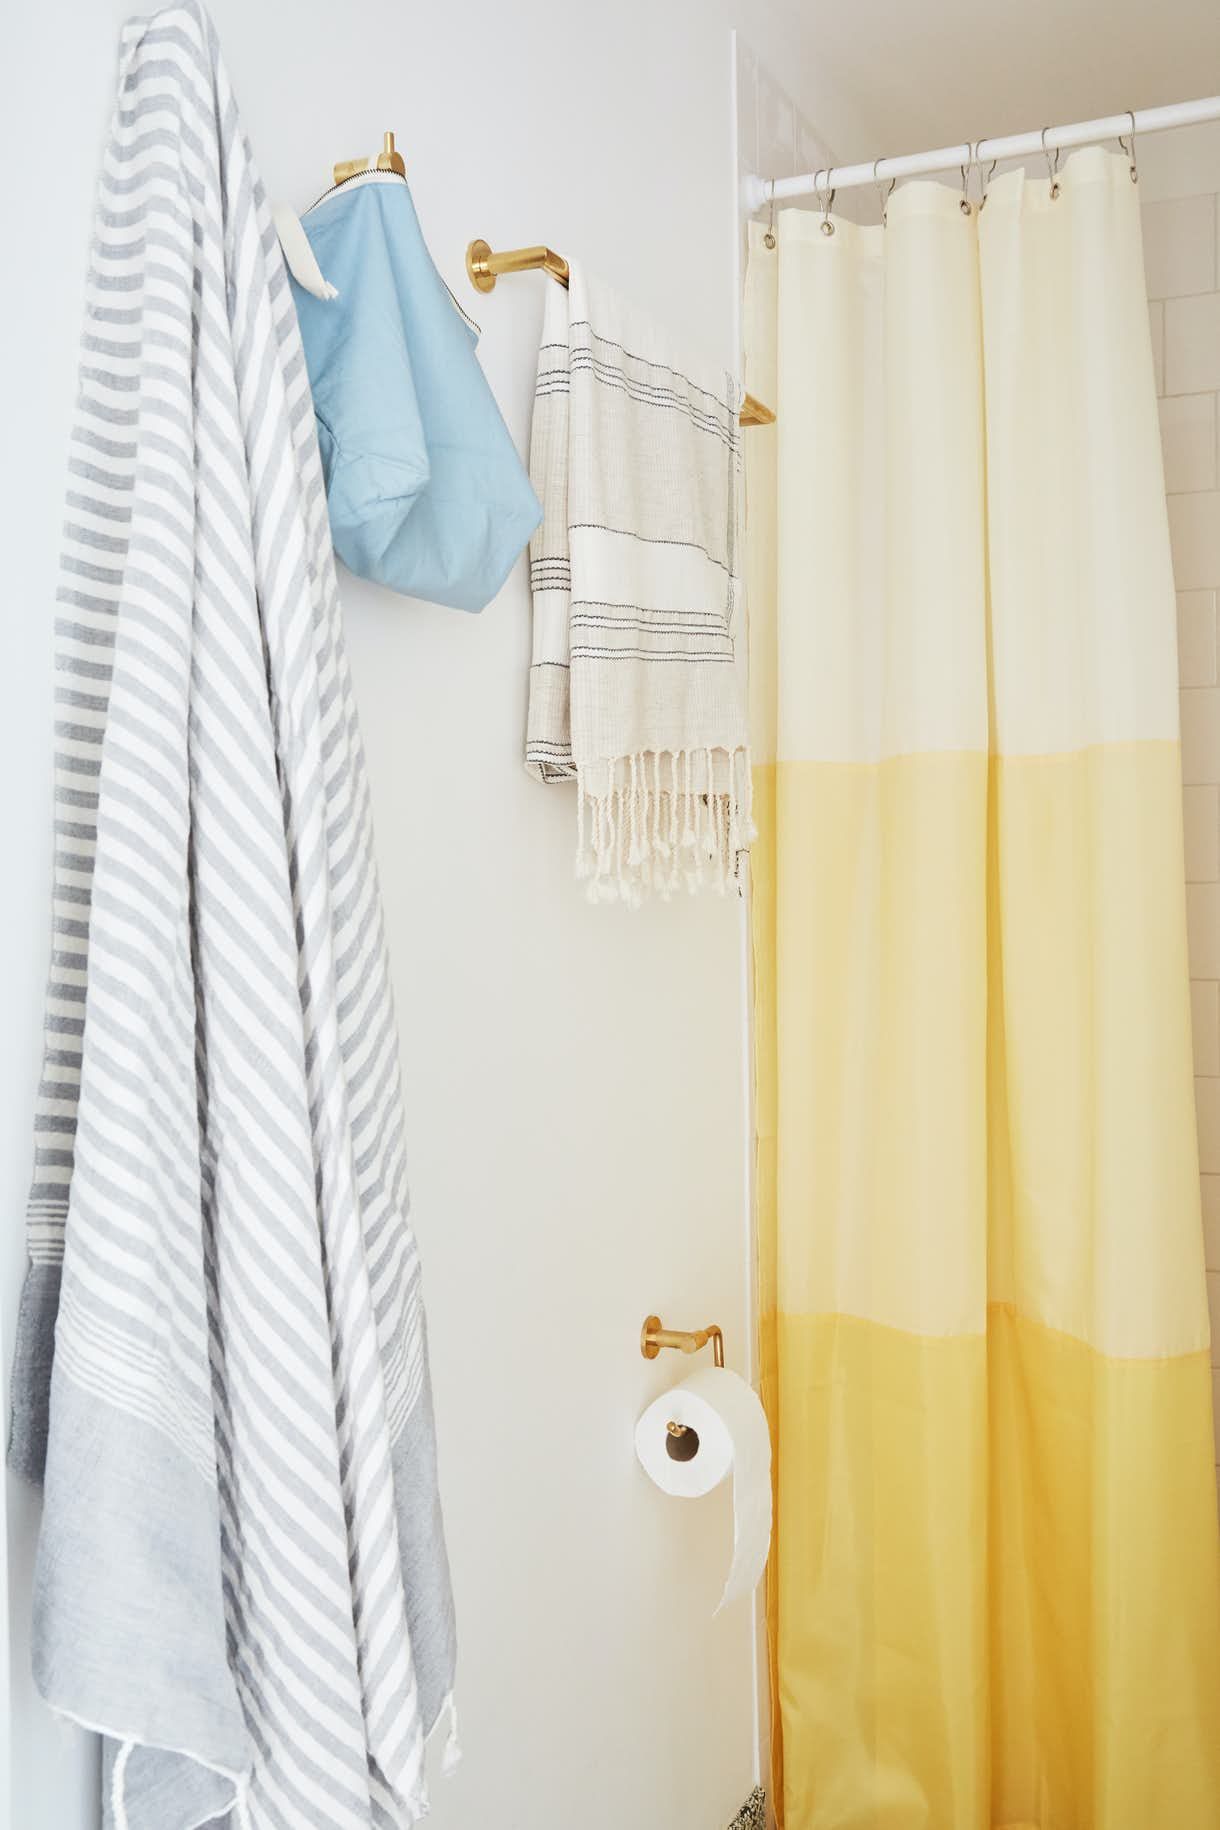 Những chi tiết như rèm che màu màu vàng chủ đạo với ba tầng ba sắc thái tươi sáng, những chiếc khăn tắm cũng được chọn lựa sắc màu dịu nhẹ.